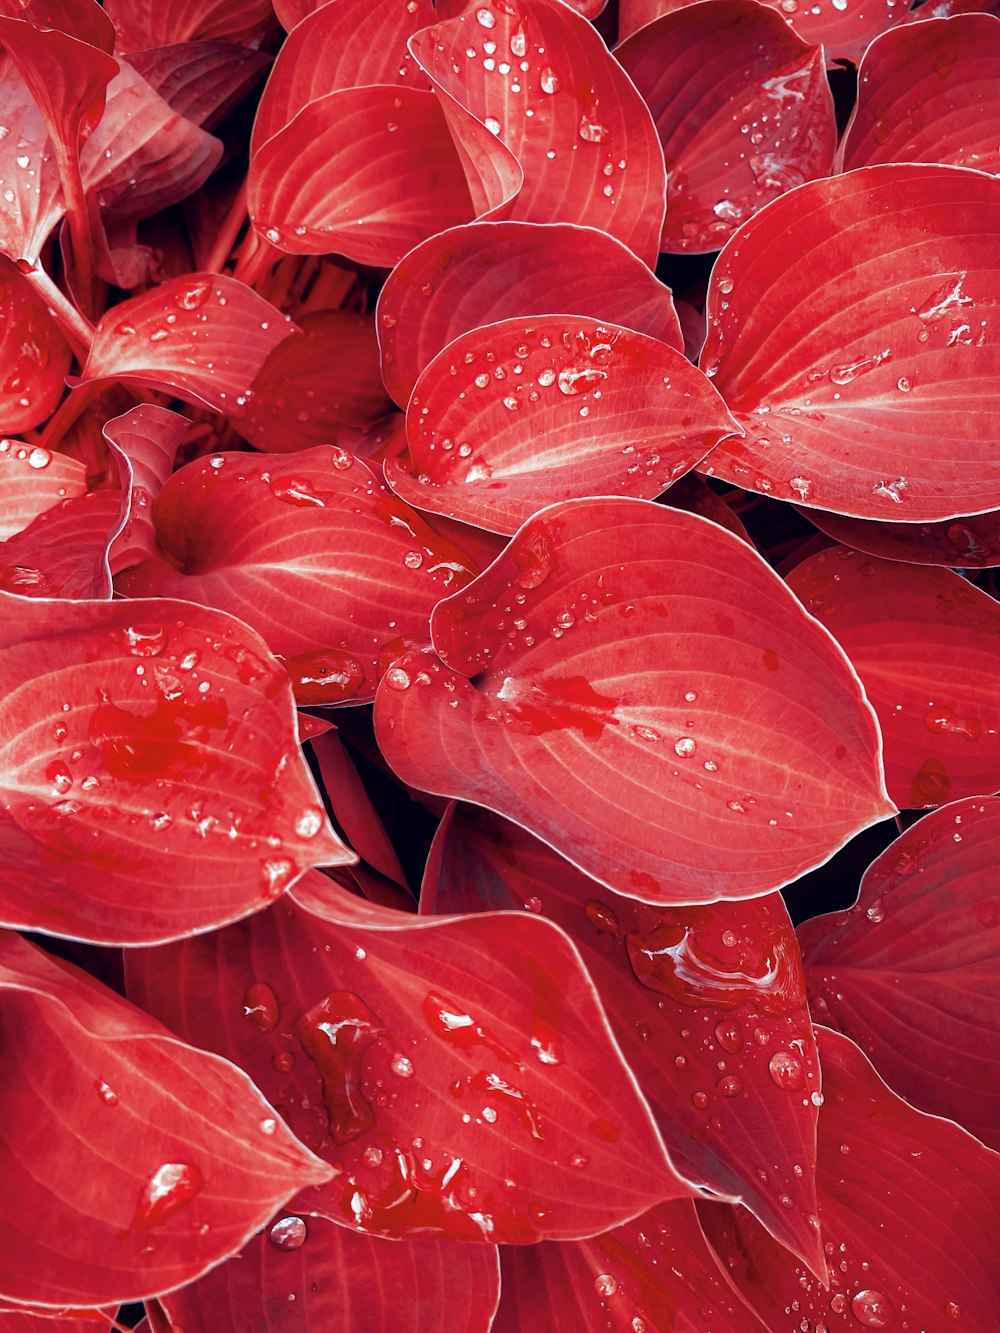 ein Strauß roter Blumen mit Wassertropfen darauf